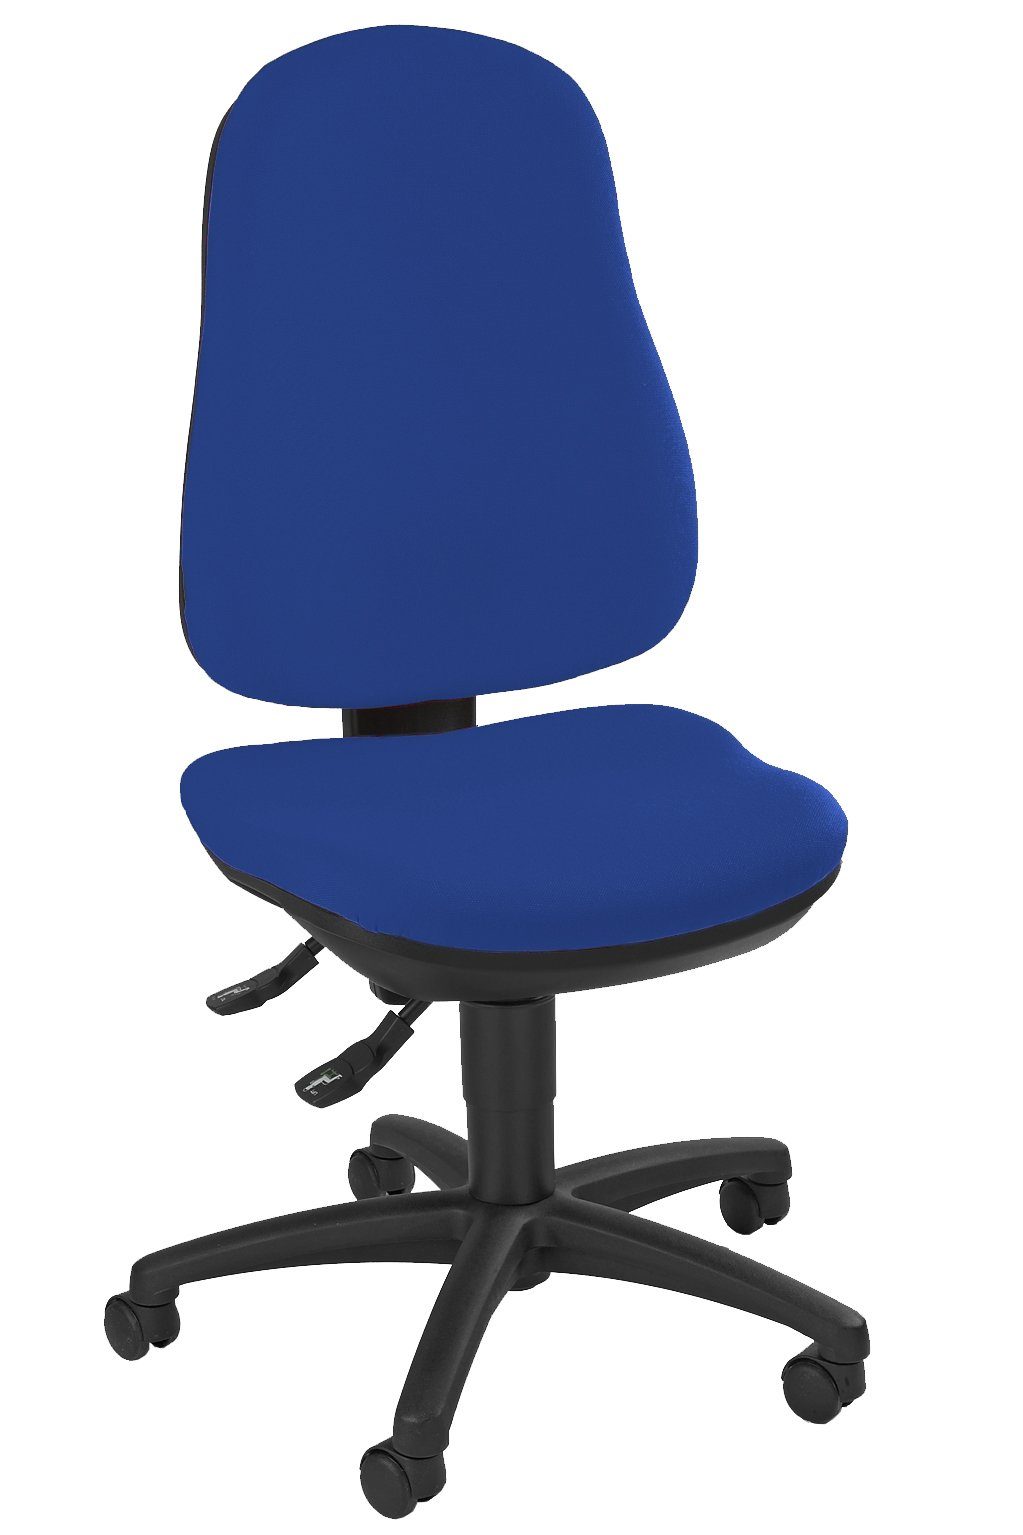 Steelboxx Drehstuhl Bürodrehstuhl mit Bandscheiben Sitz Schreibtischstuhl (1), Sitz- und Rückenflächen sind ergonomisch geformt, Sitzhöhe stufenlos verstellbar Bezug: Blau